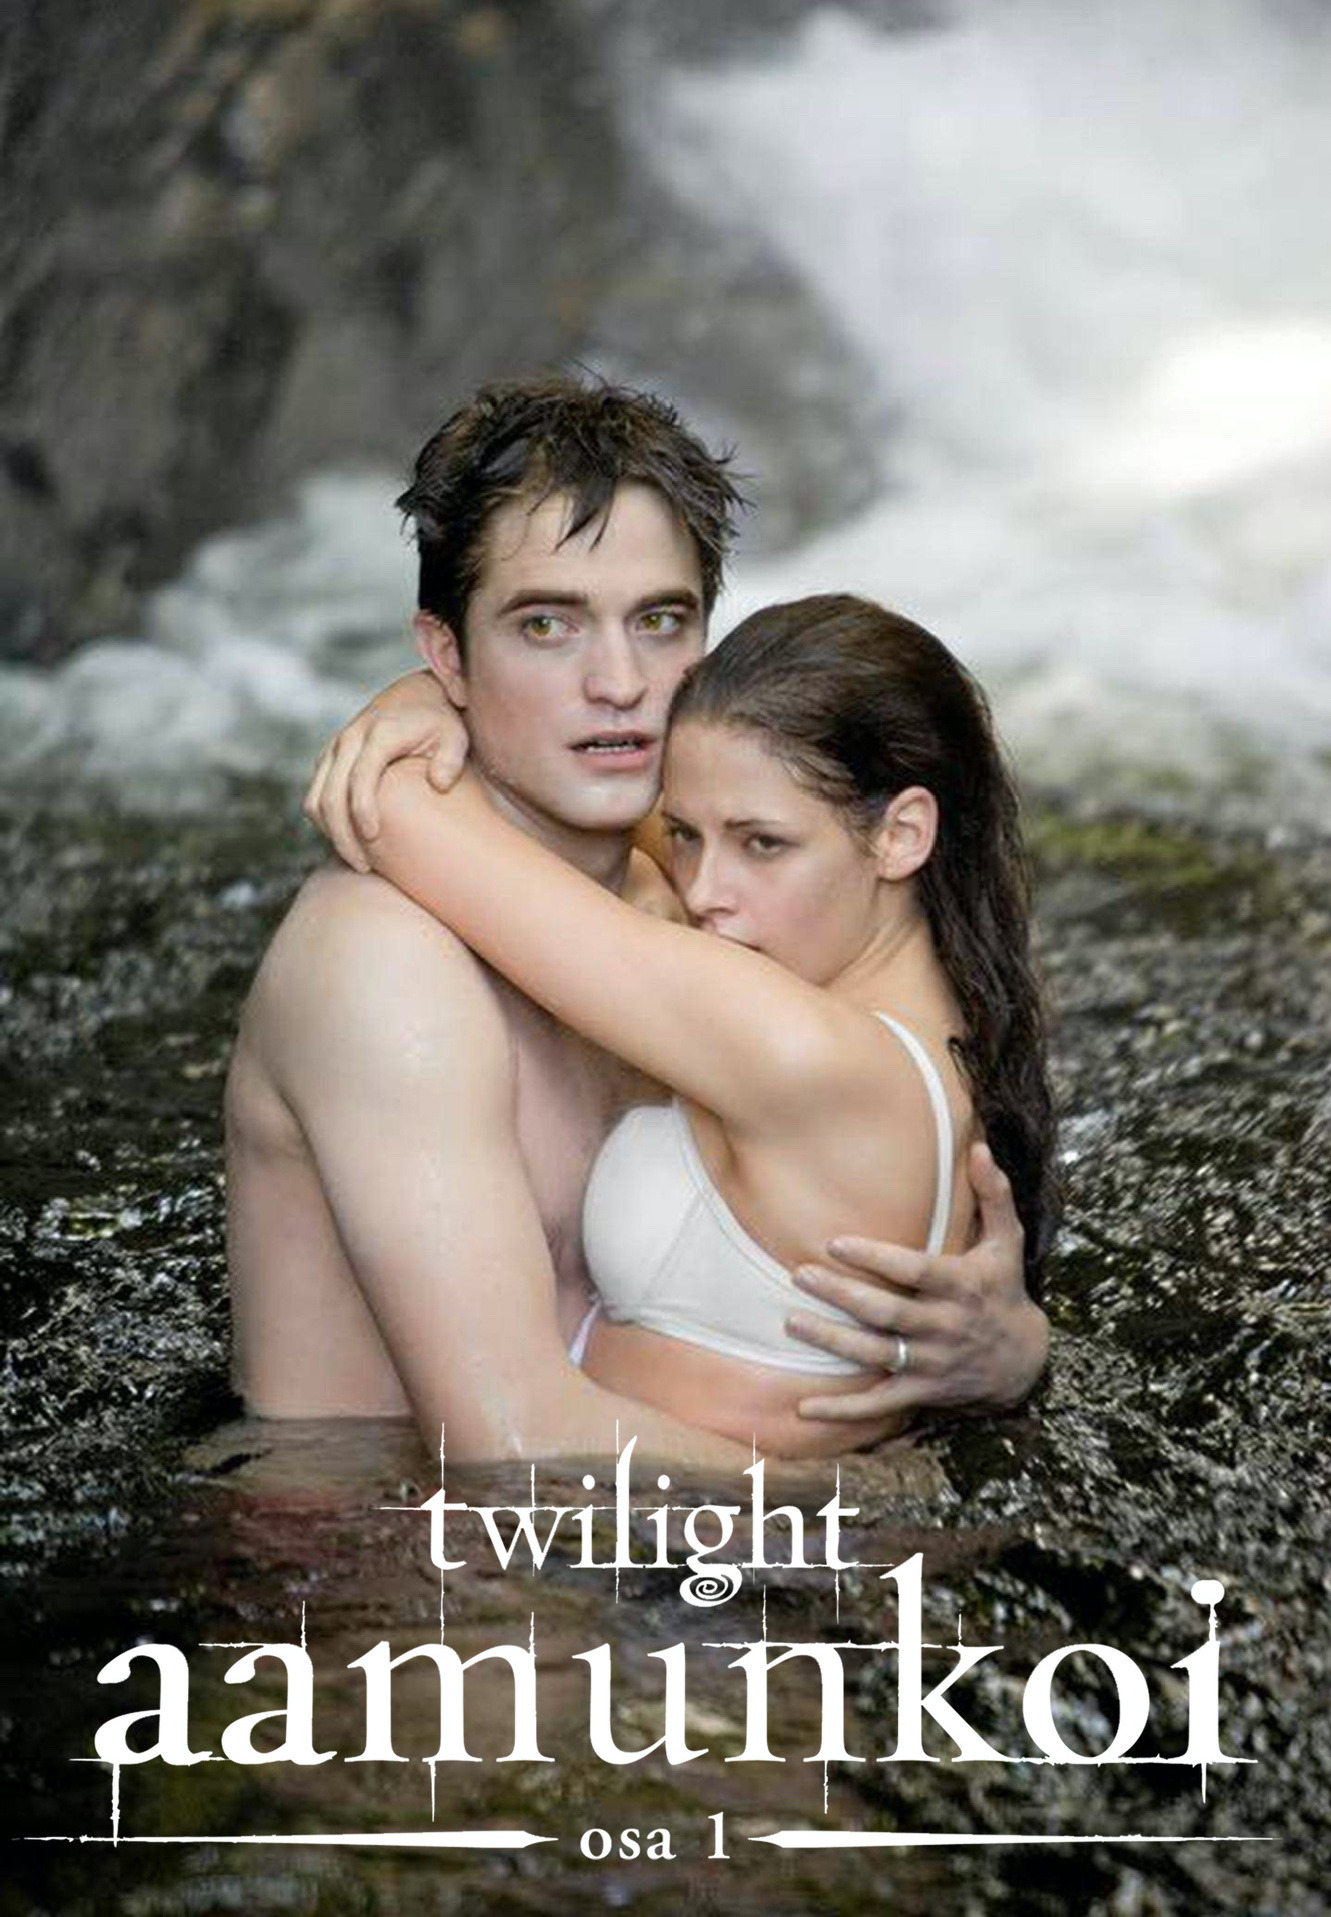 Twilight Aamunkoi osa 1 elokuvilta - Omakotivalkoinen